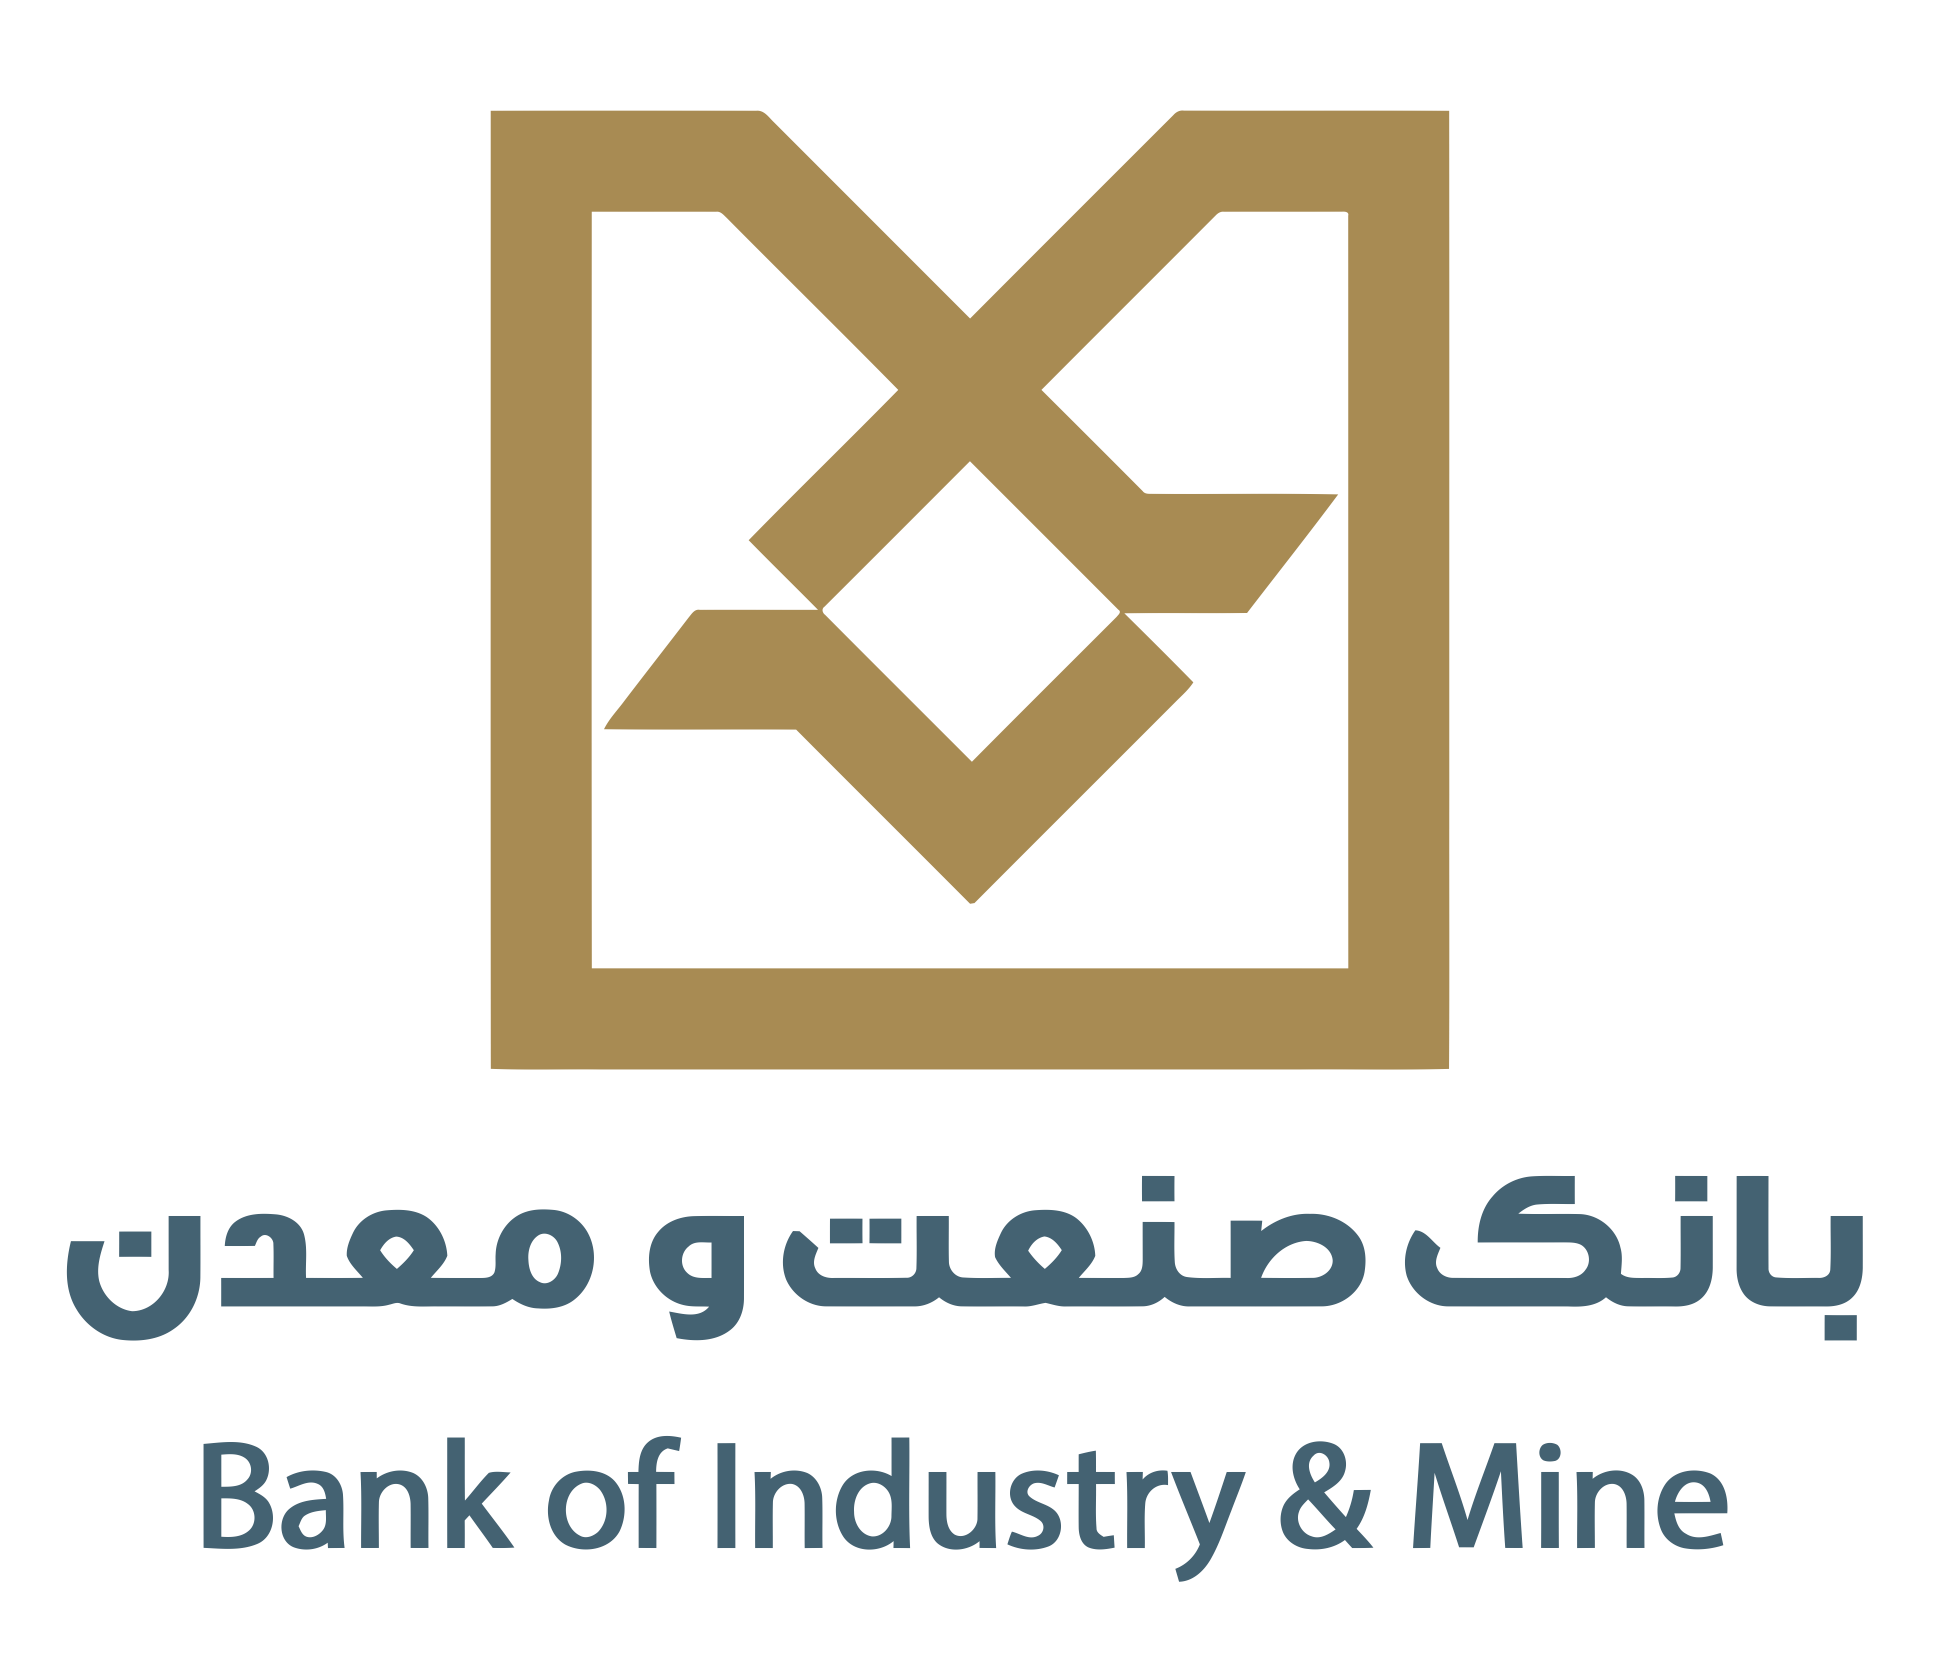 اهتمام ویژه بانک صنعت و معدن در واگذاری اموال مازاد